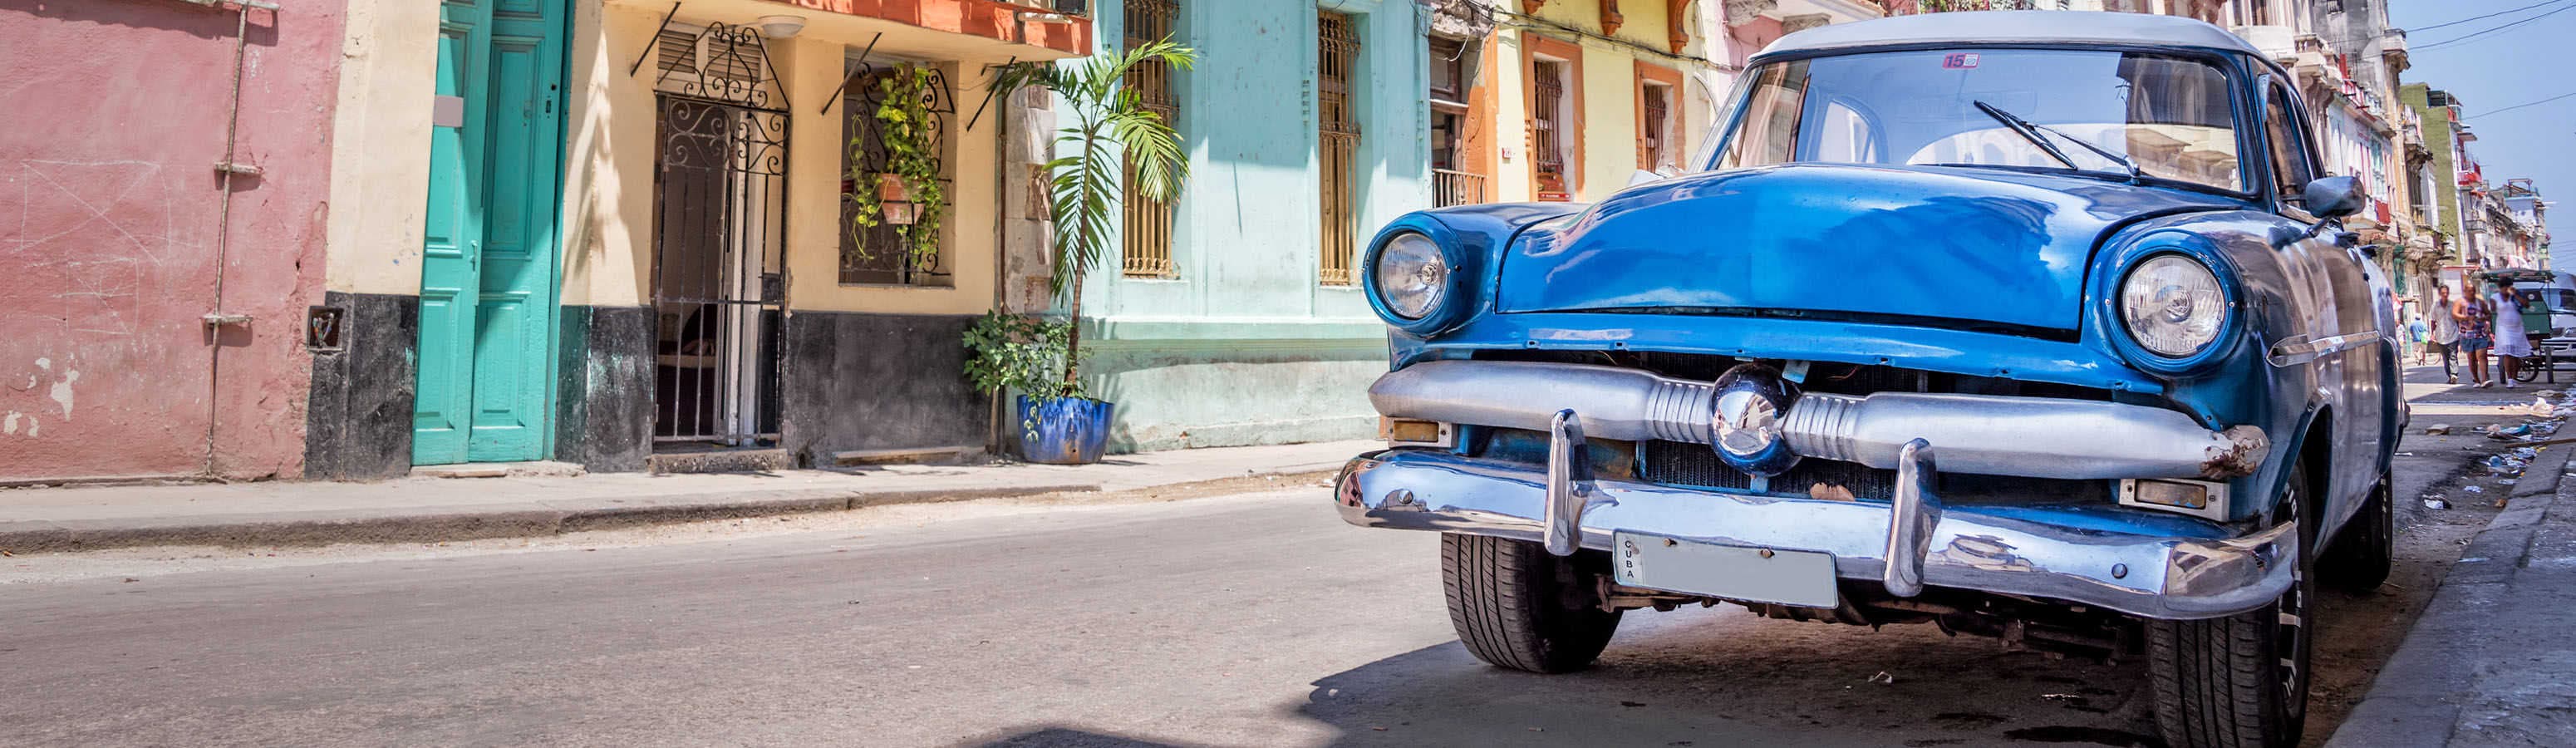 Kuba - výlet pre milovníkov veteránov